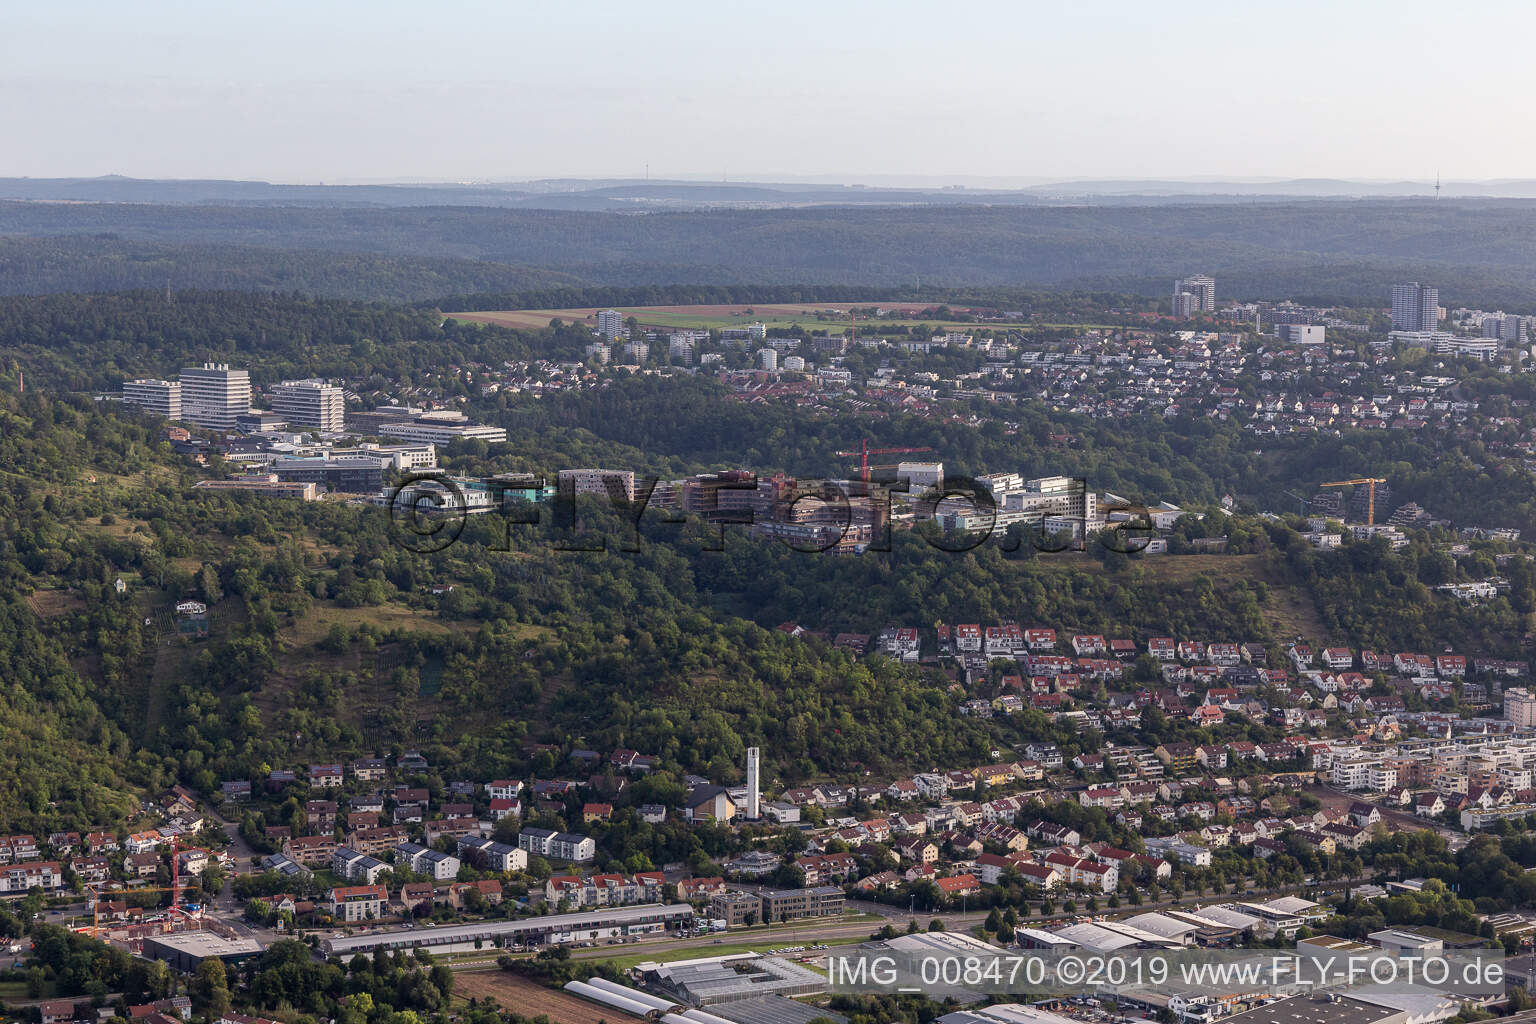 Vue aérienne de Clinique BG, Université et Hôpital Universitaire Tübingen à Tübingen dans le département Bade-Wurtemberg, Allemagne